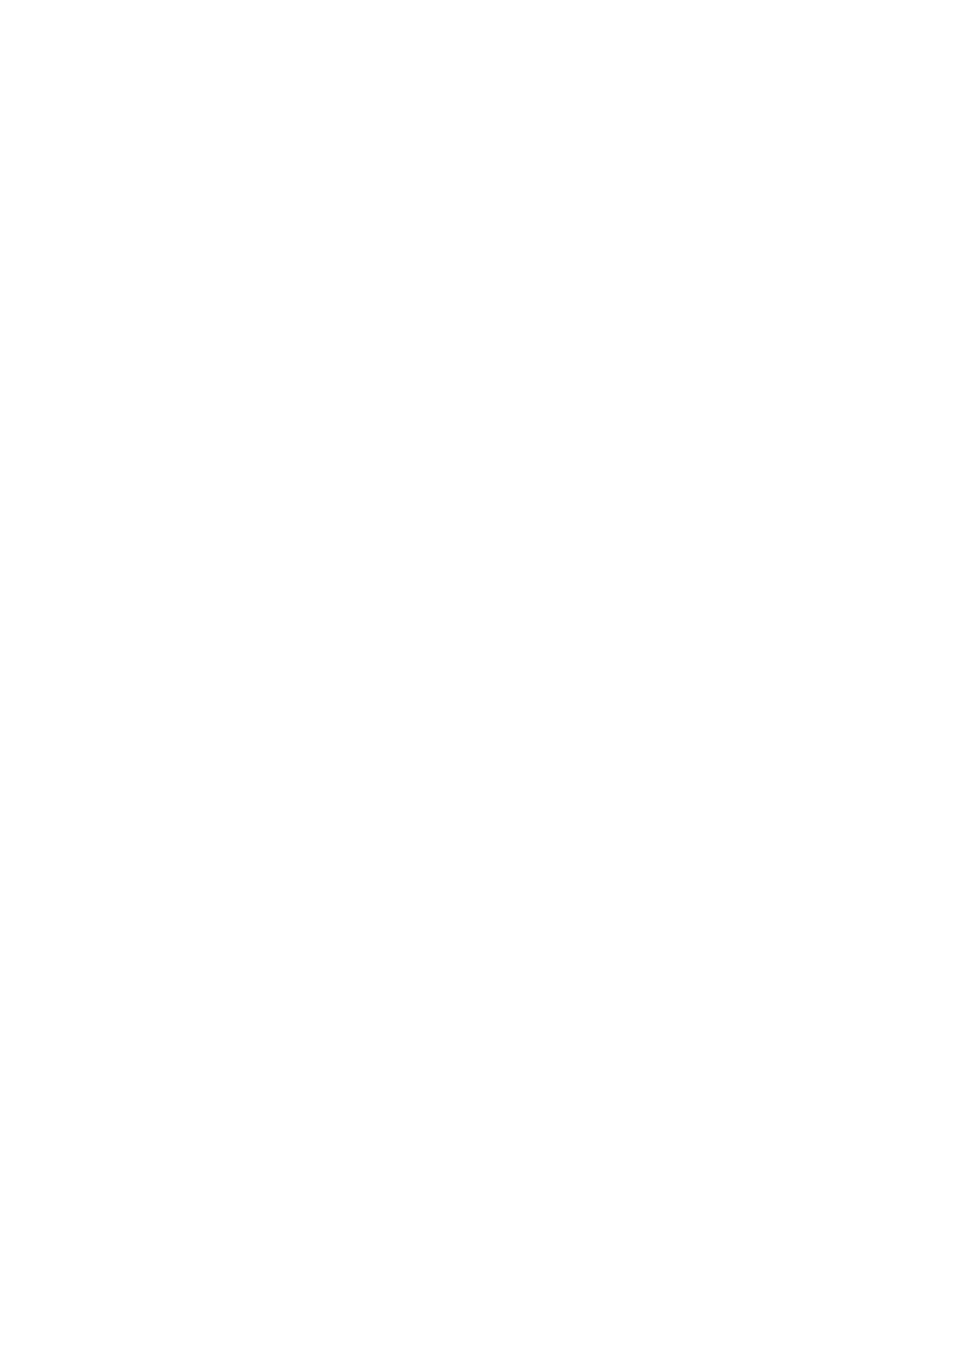 PS 53/2013 Rapport fra prosjektgruppa for forprosjektering av Norsk Laksesenter: innspill fra Tana kommune. Saksprotokoll saksnr. 53/2013 i Miljø-, landbruks- og utmarksutvalget - 01.10.